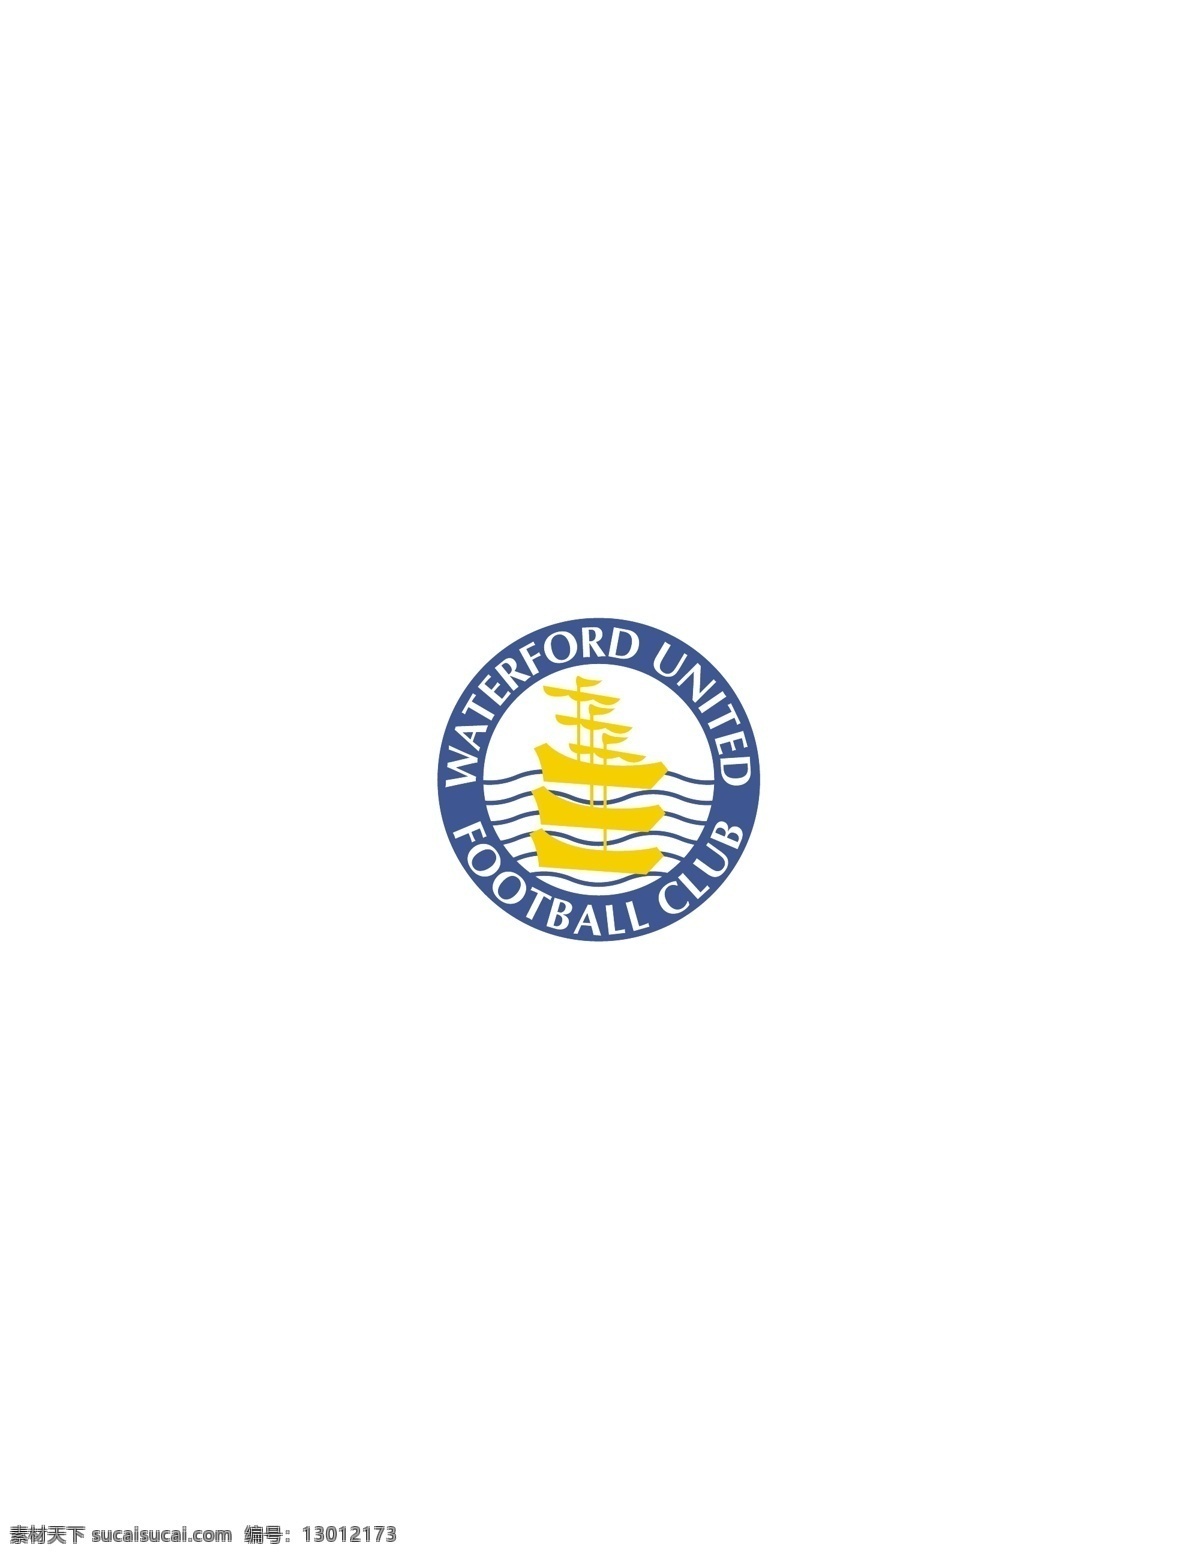 waterford united logo 设计欣赏 职业 足球队 标志设计 欣赏 矢量下载 网页矢量 商业矢量 logo大全 红色